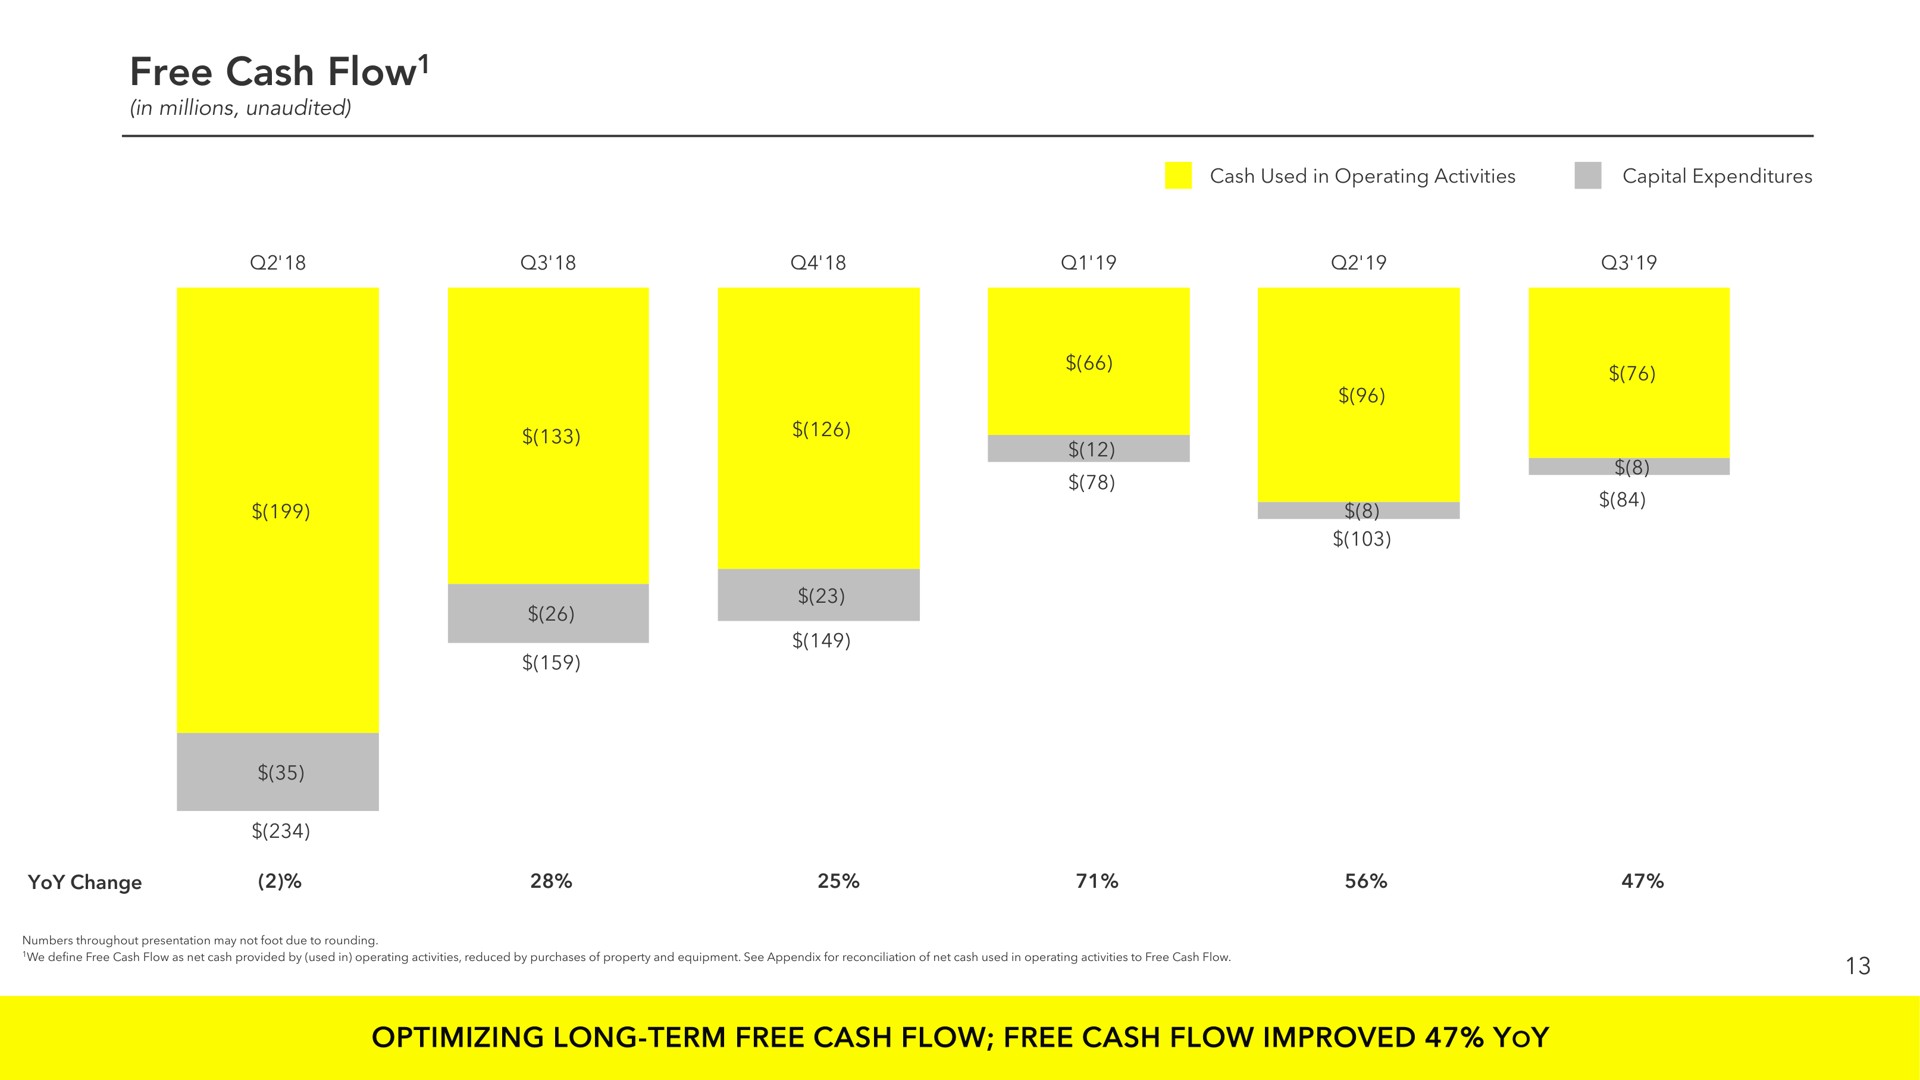 free cash flow optimizing long term free cash flow free cash flow improved yoy | Snap Inc